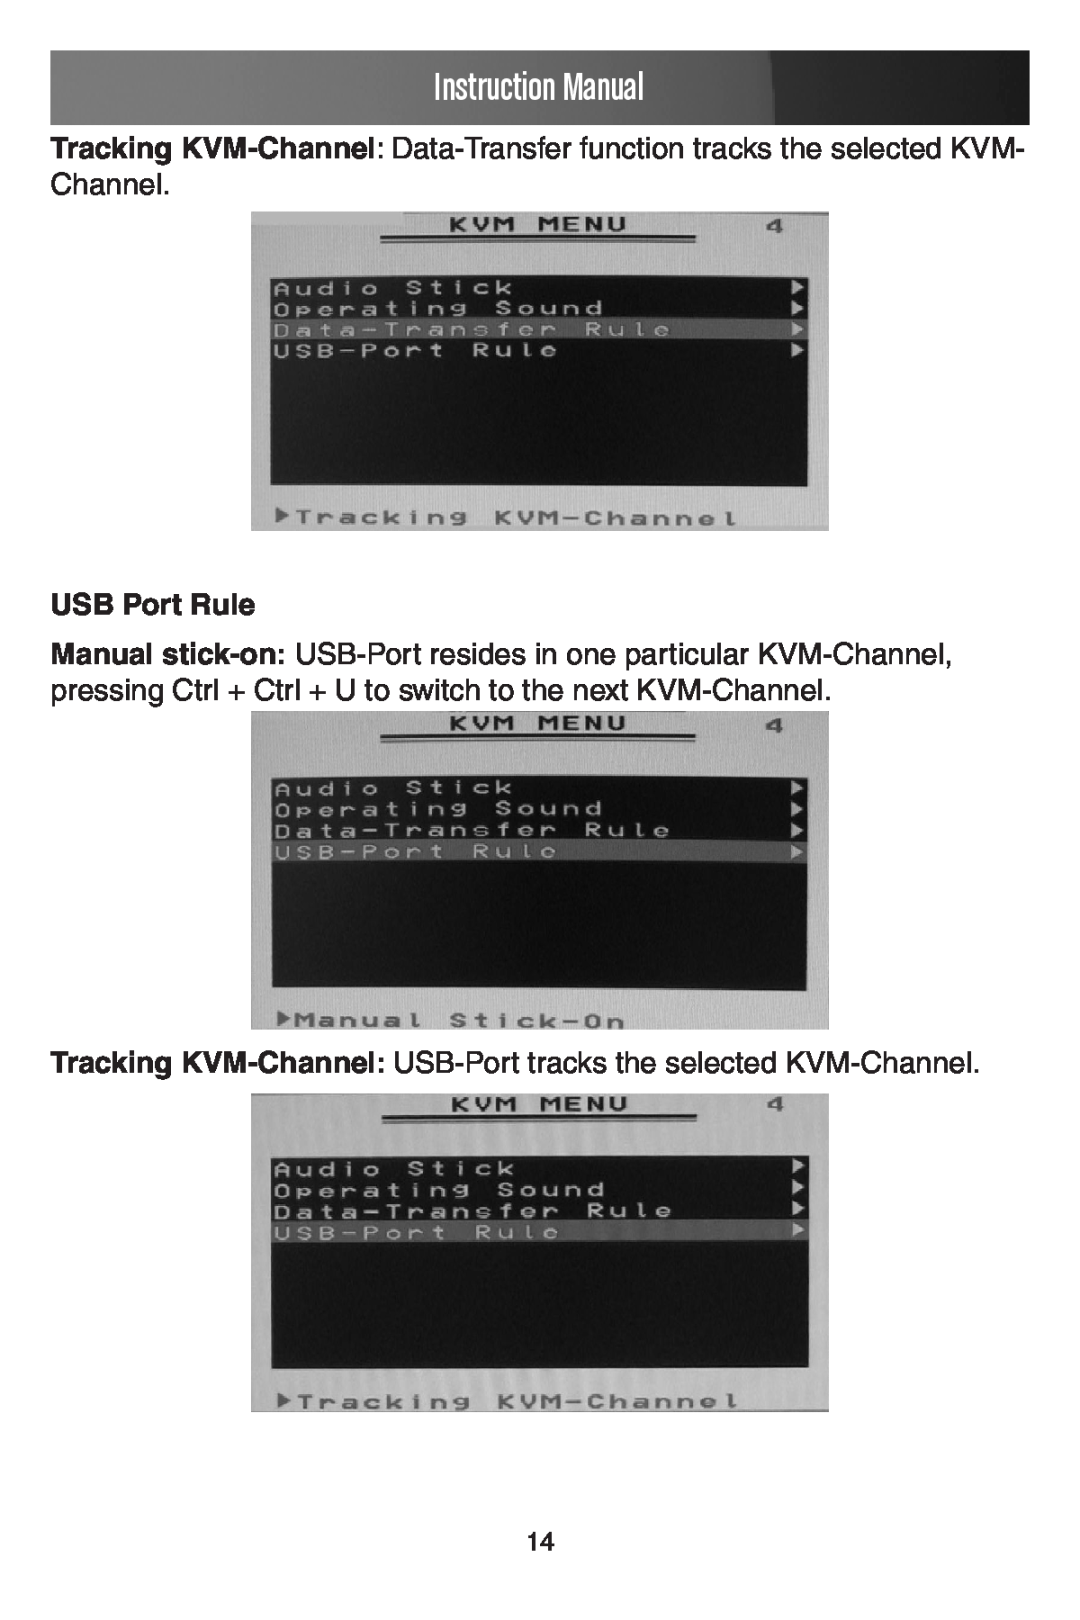 StarTech.com SV441DUSBI USB Port Rule, Instruction Manual, Tracking KVM-Channel USB-Port tracks the selected KVM-Channel 